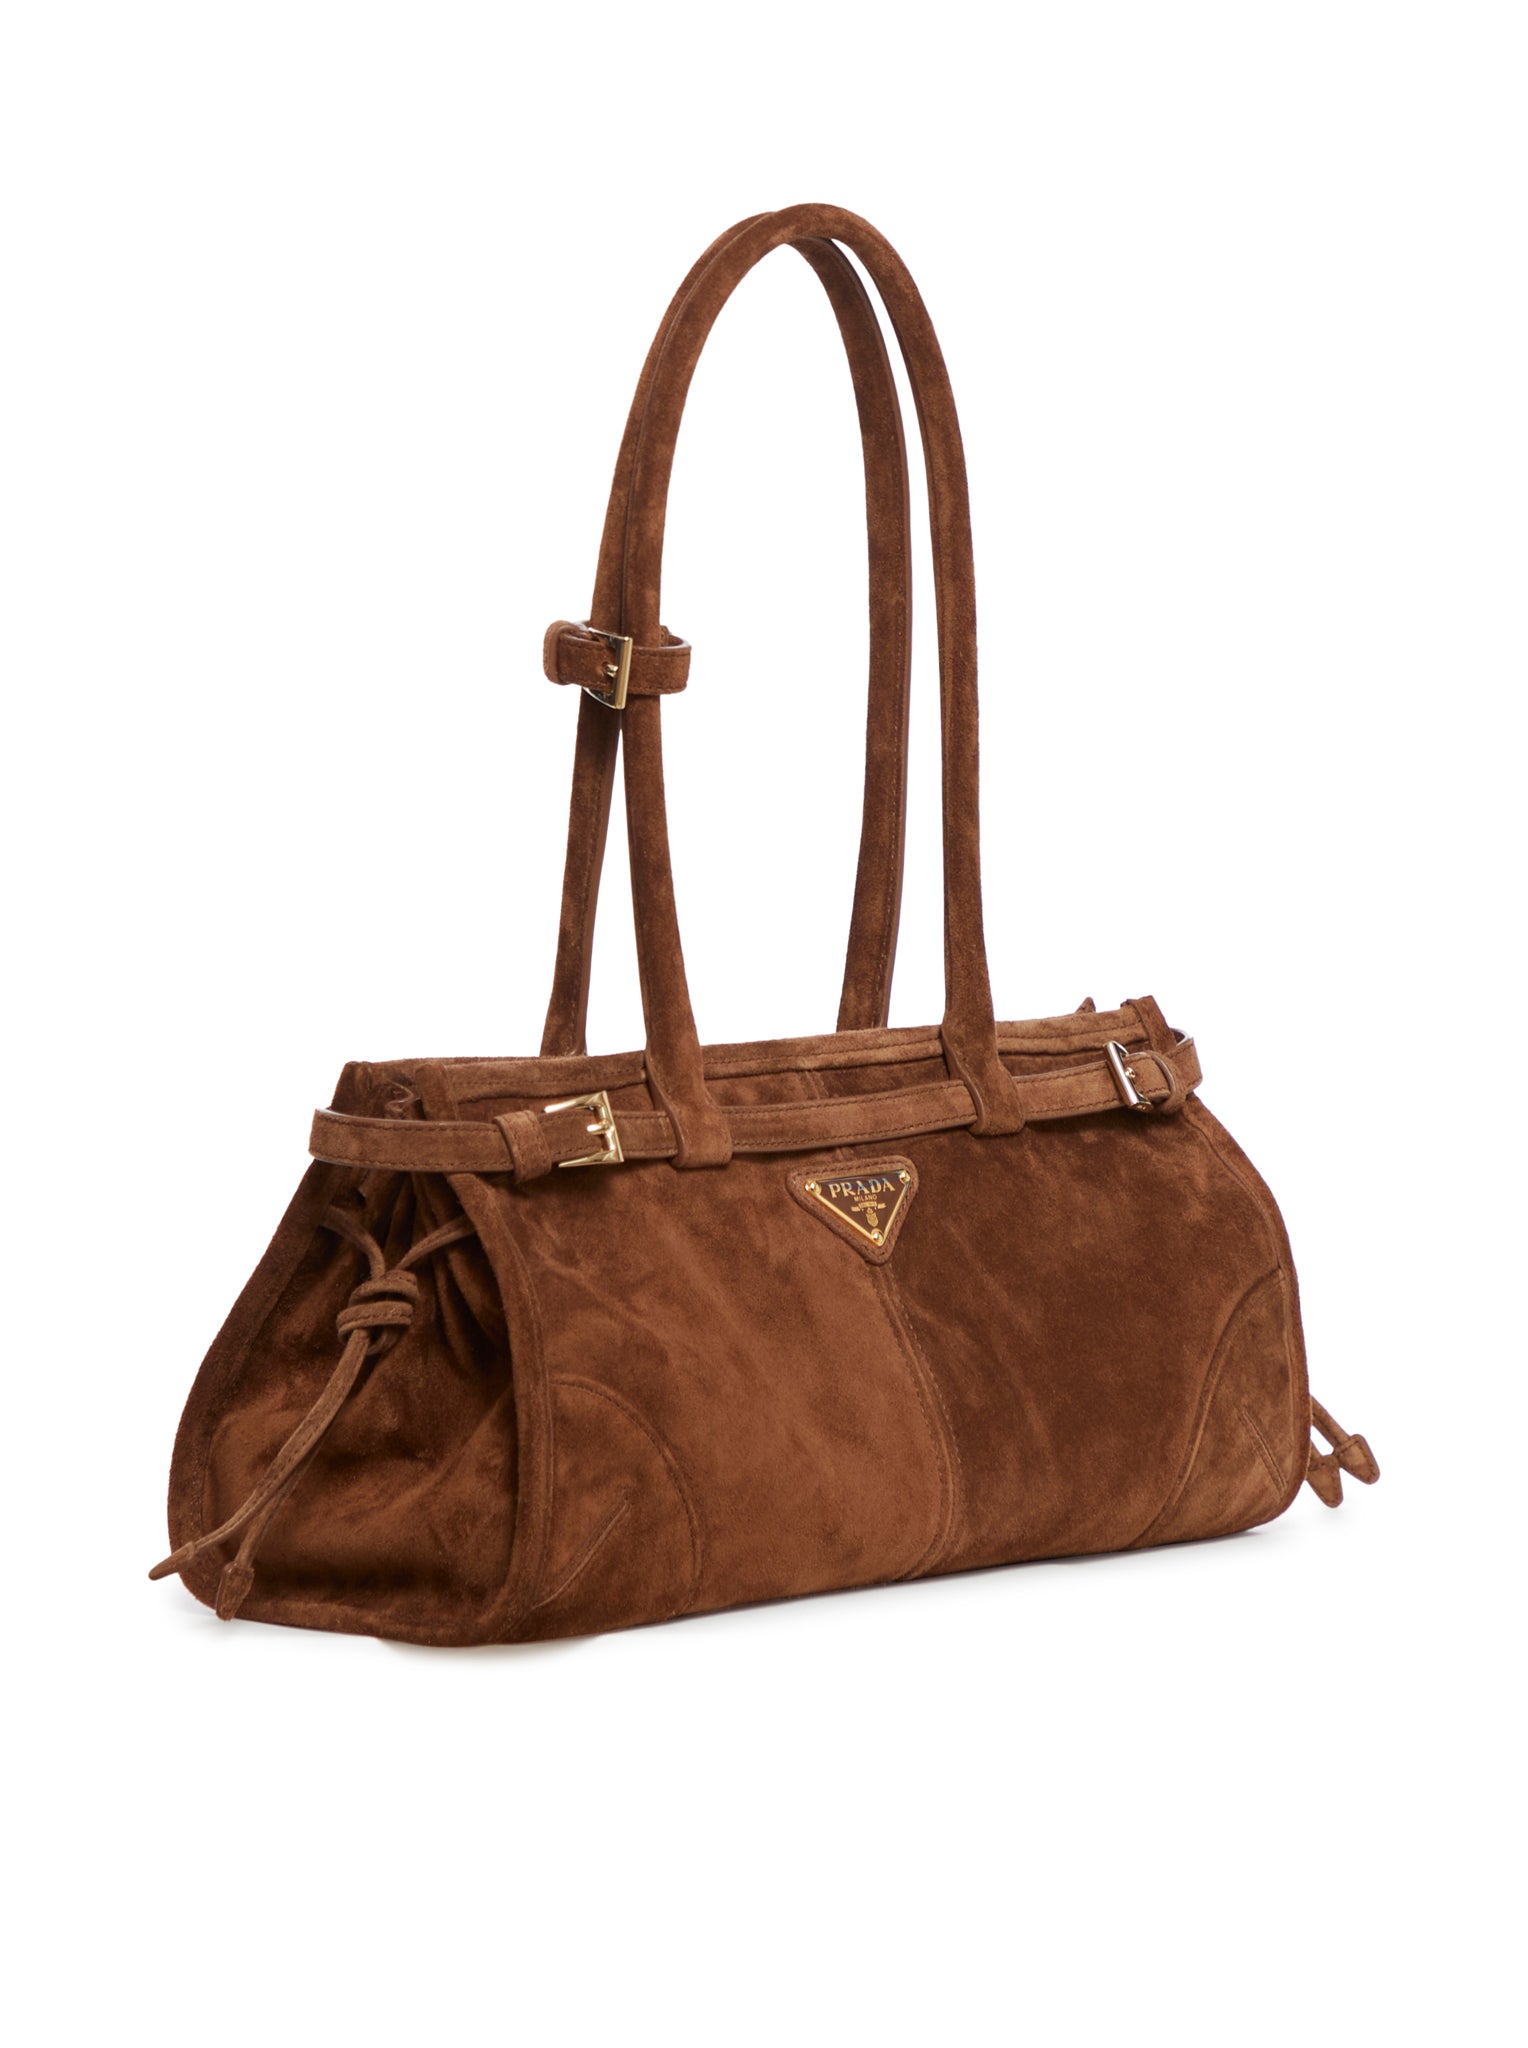 Medium handbag in suede